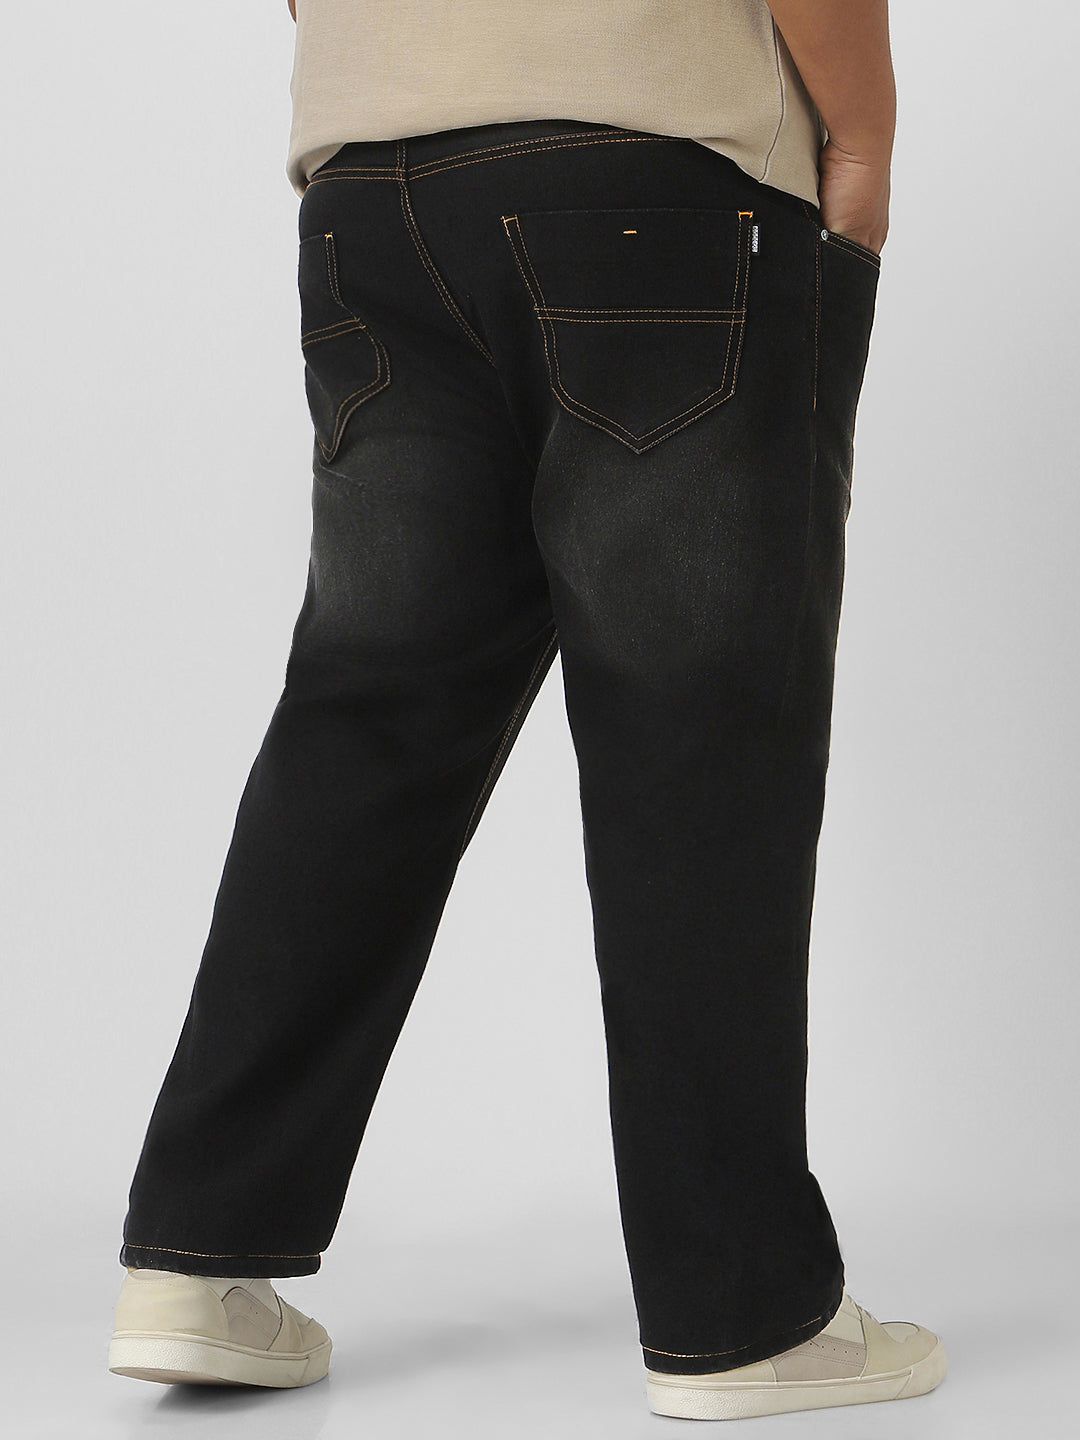 Plus Men's Black Regular Fit Washed Jeans Stretchable